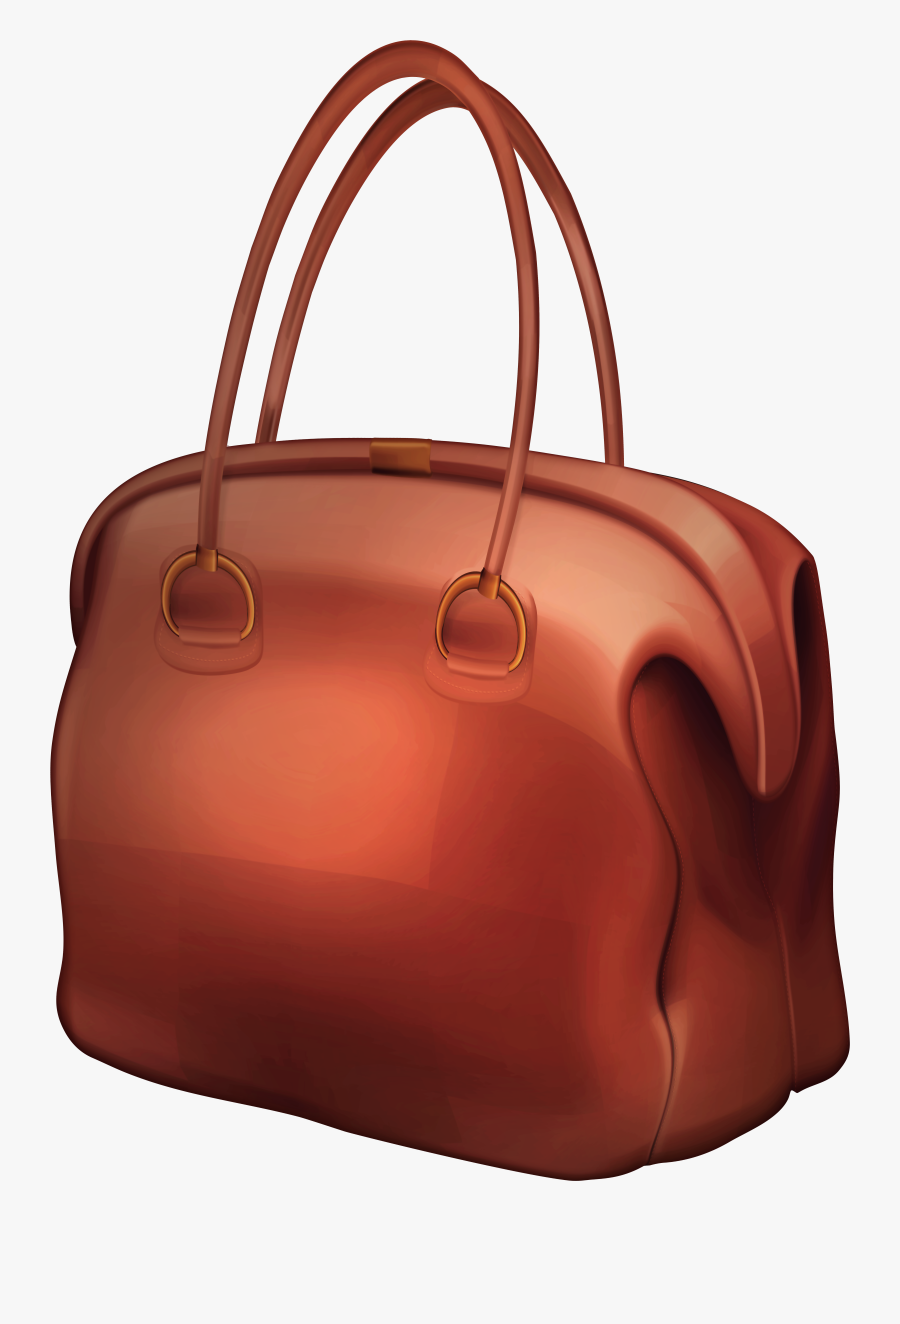 Brown Bag Png Clip Art - Handbag, Transparent Clipart